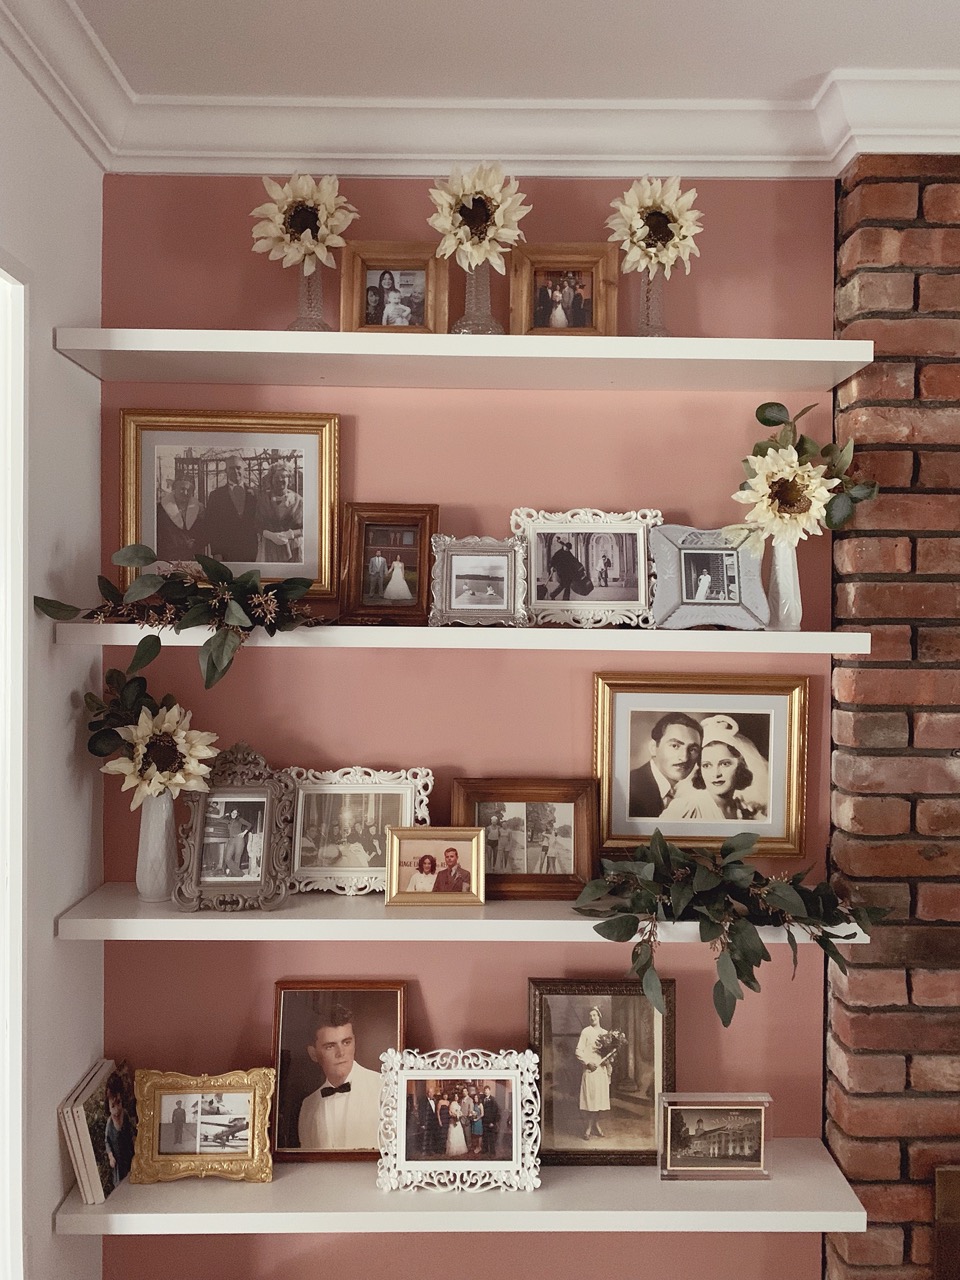 Framed photos on shelf